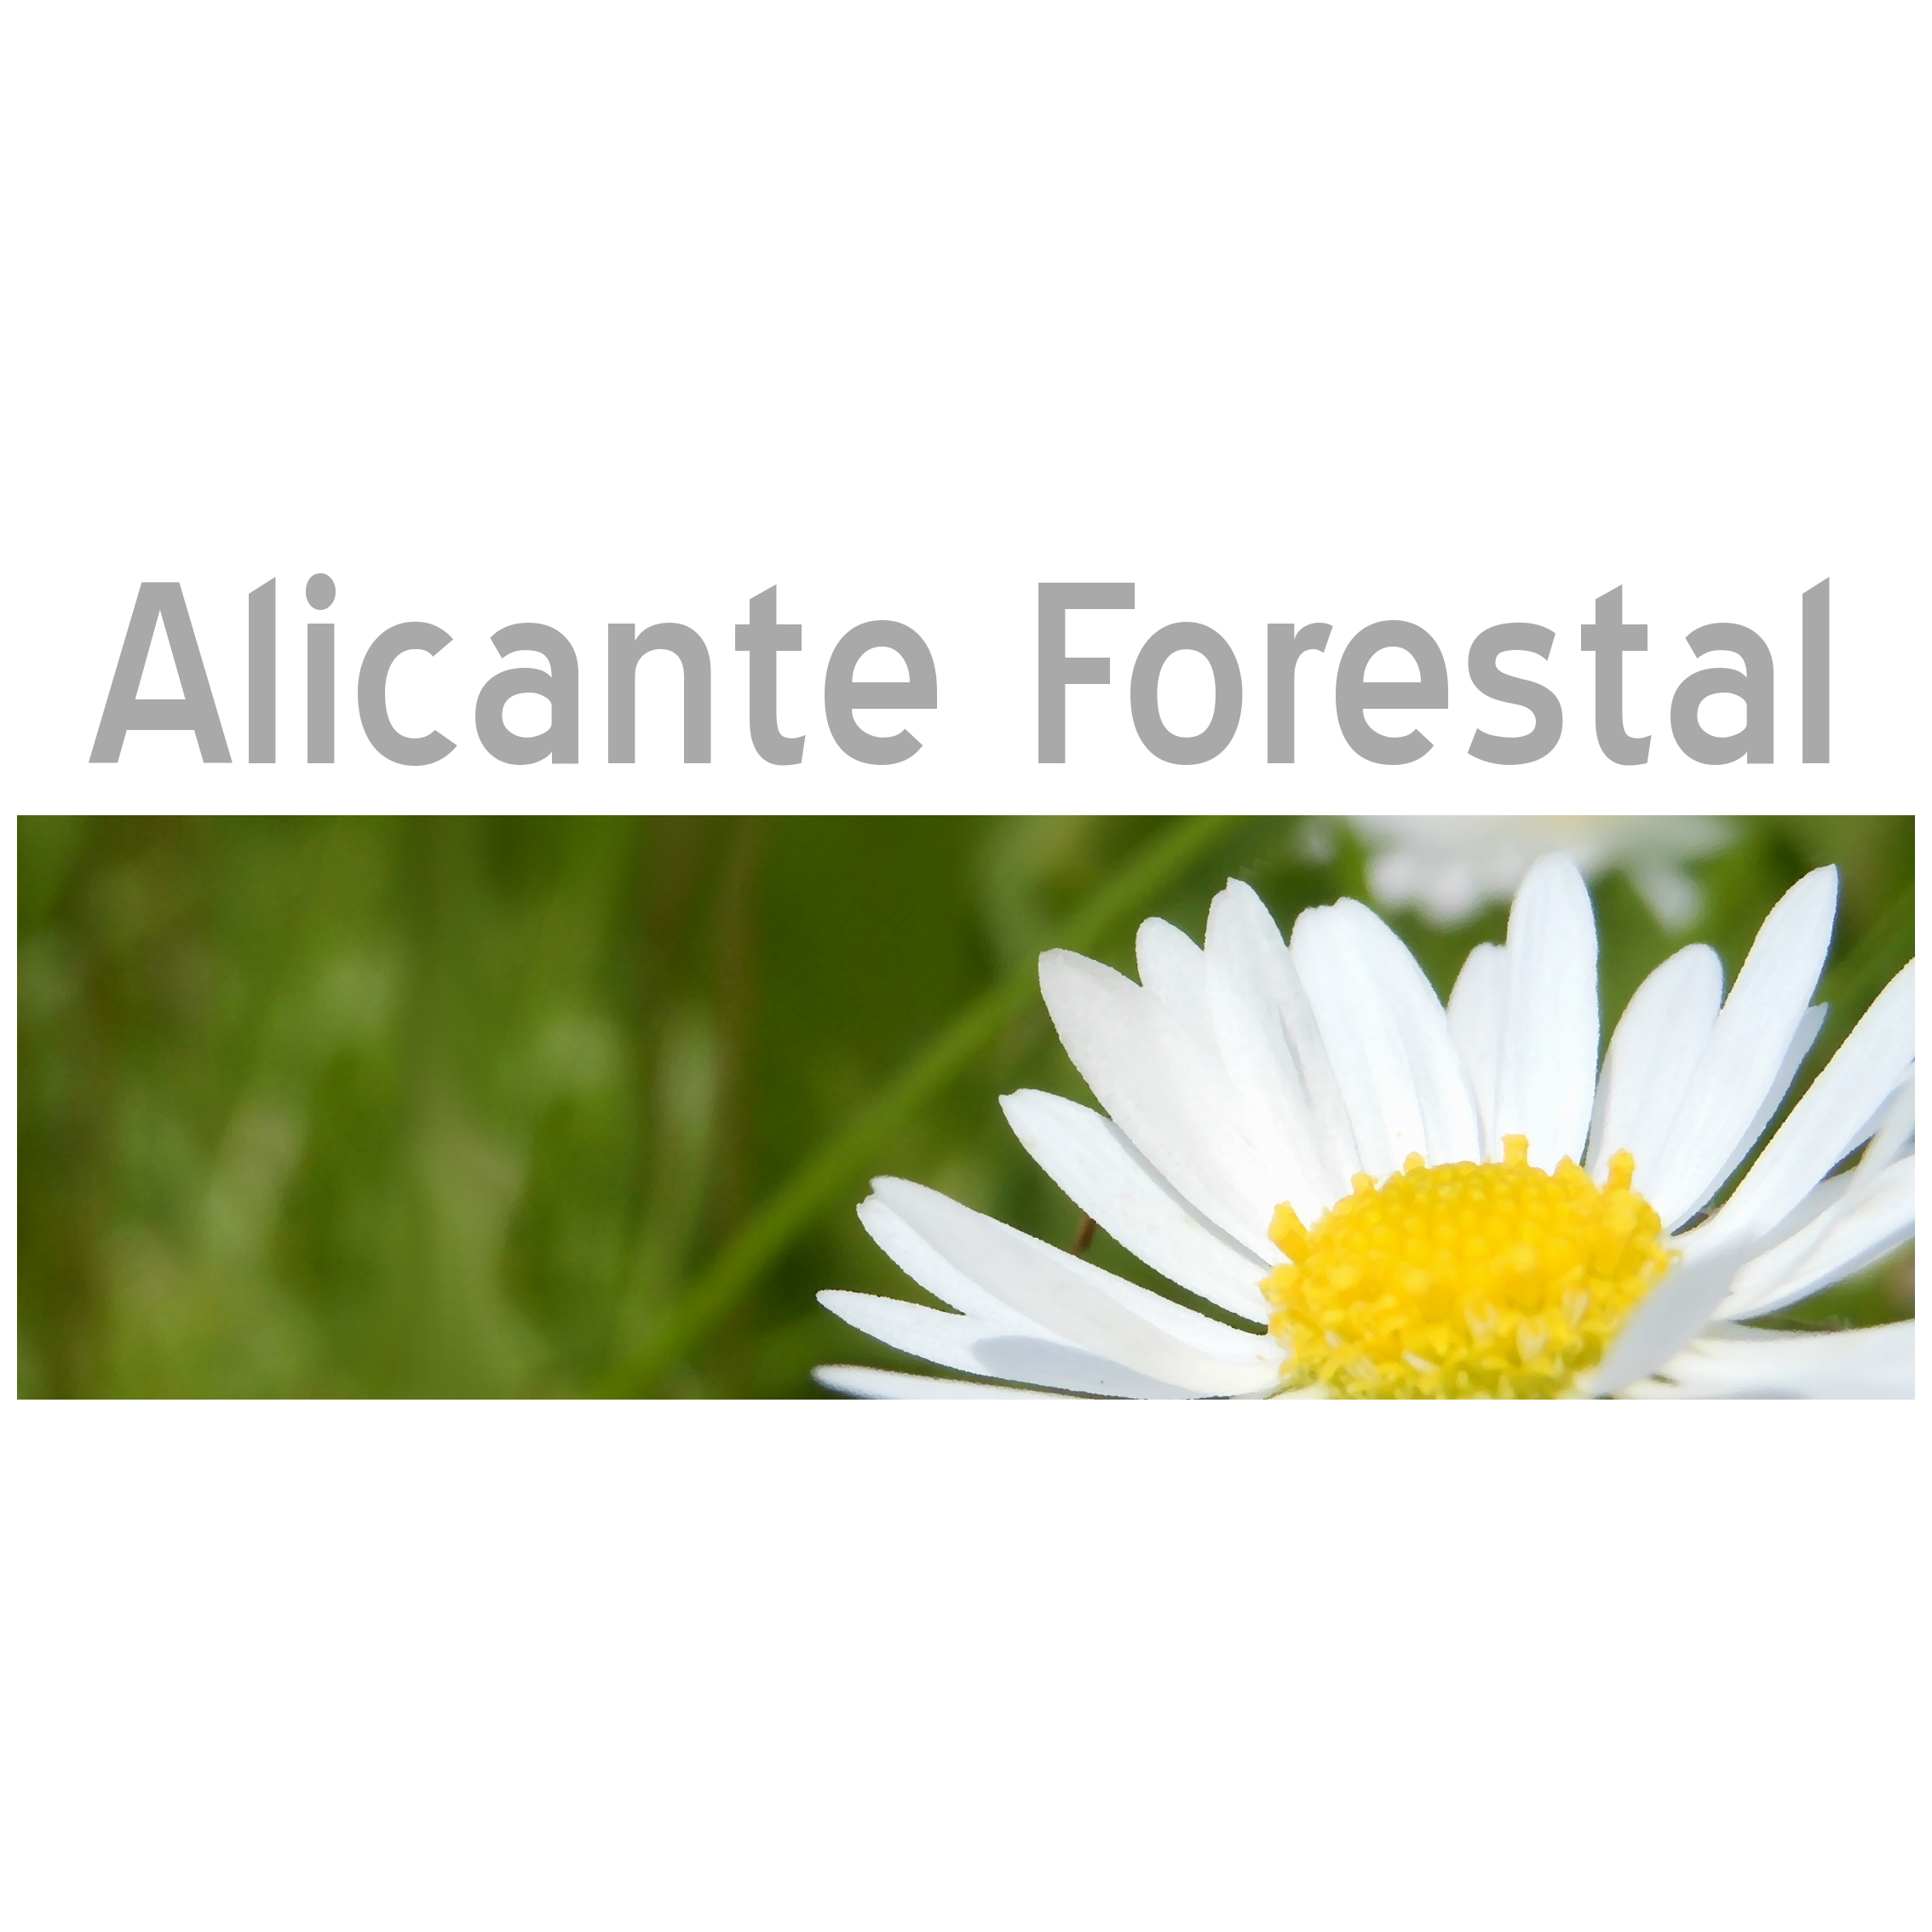 Alicante Forestal